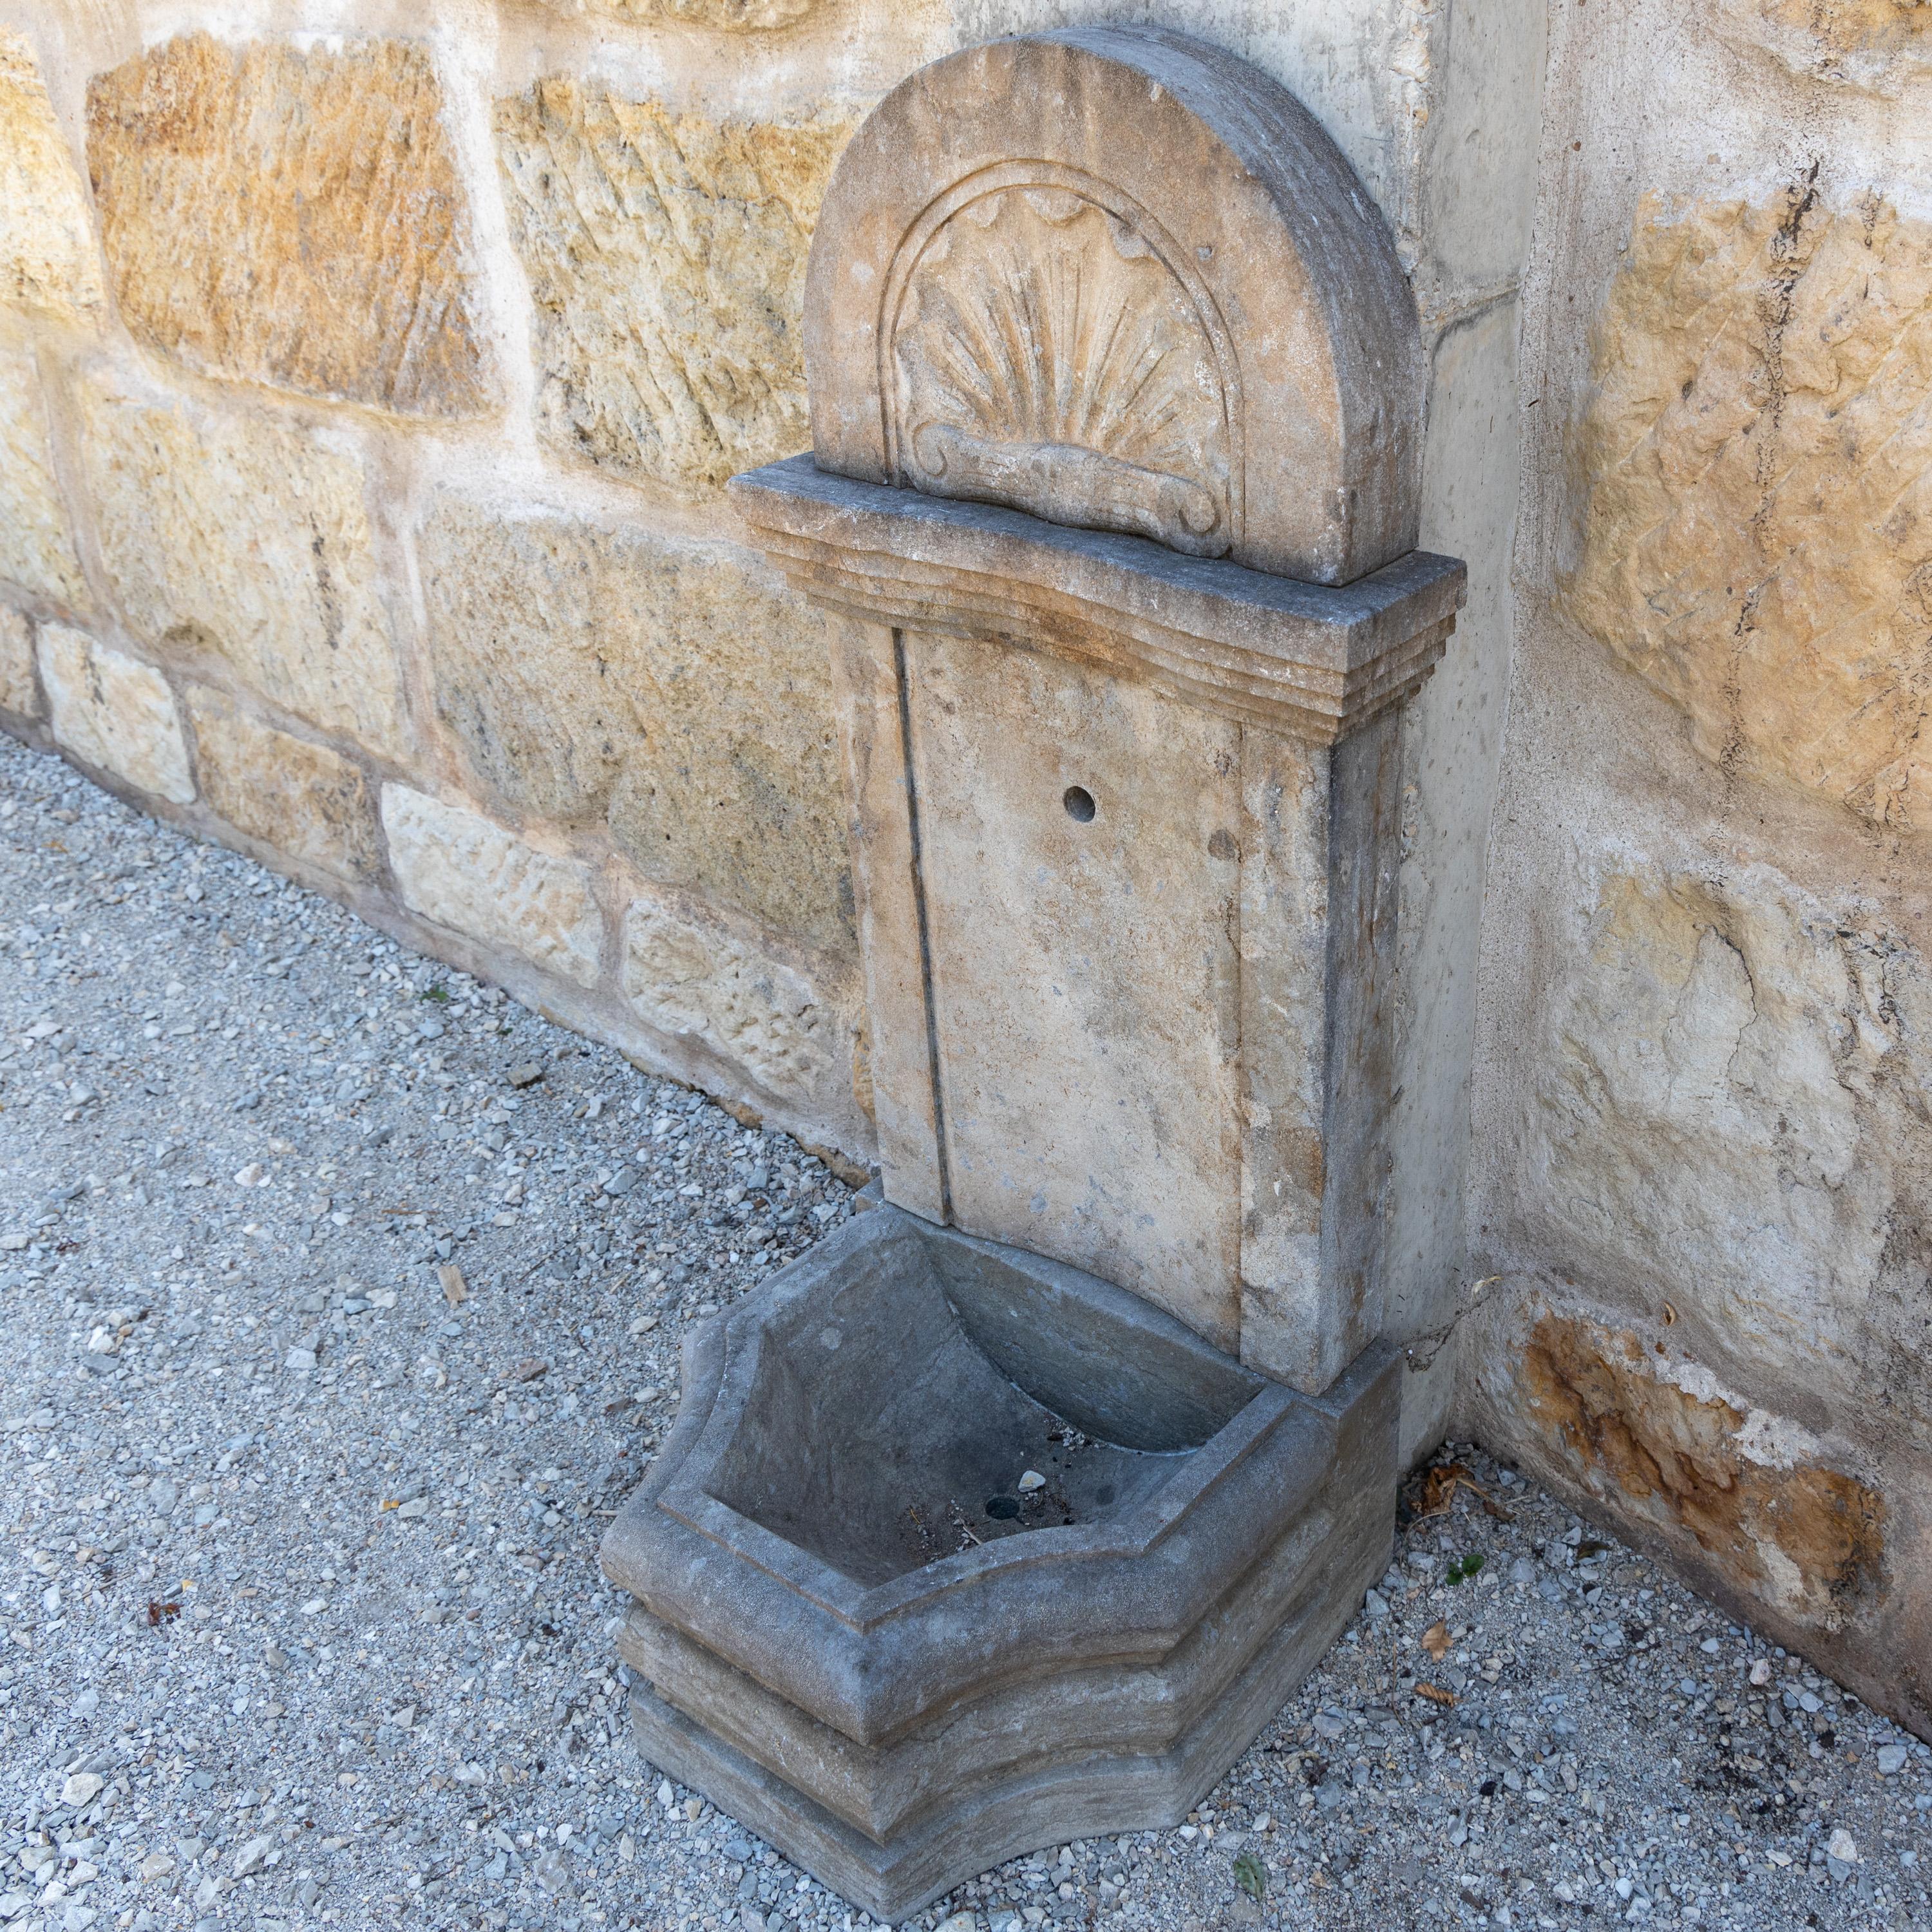 Wandbrunnen mit kleinem Becken mit profilierter Wand und segmentförmigem Aufsatz mit Muscheldekor.